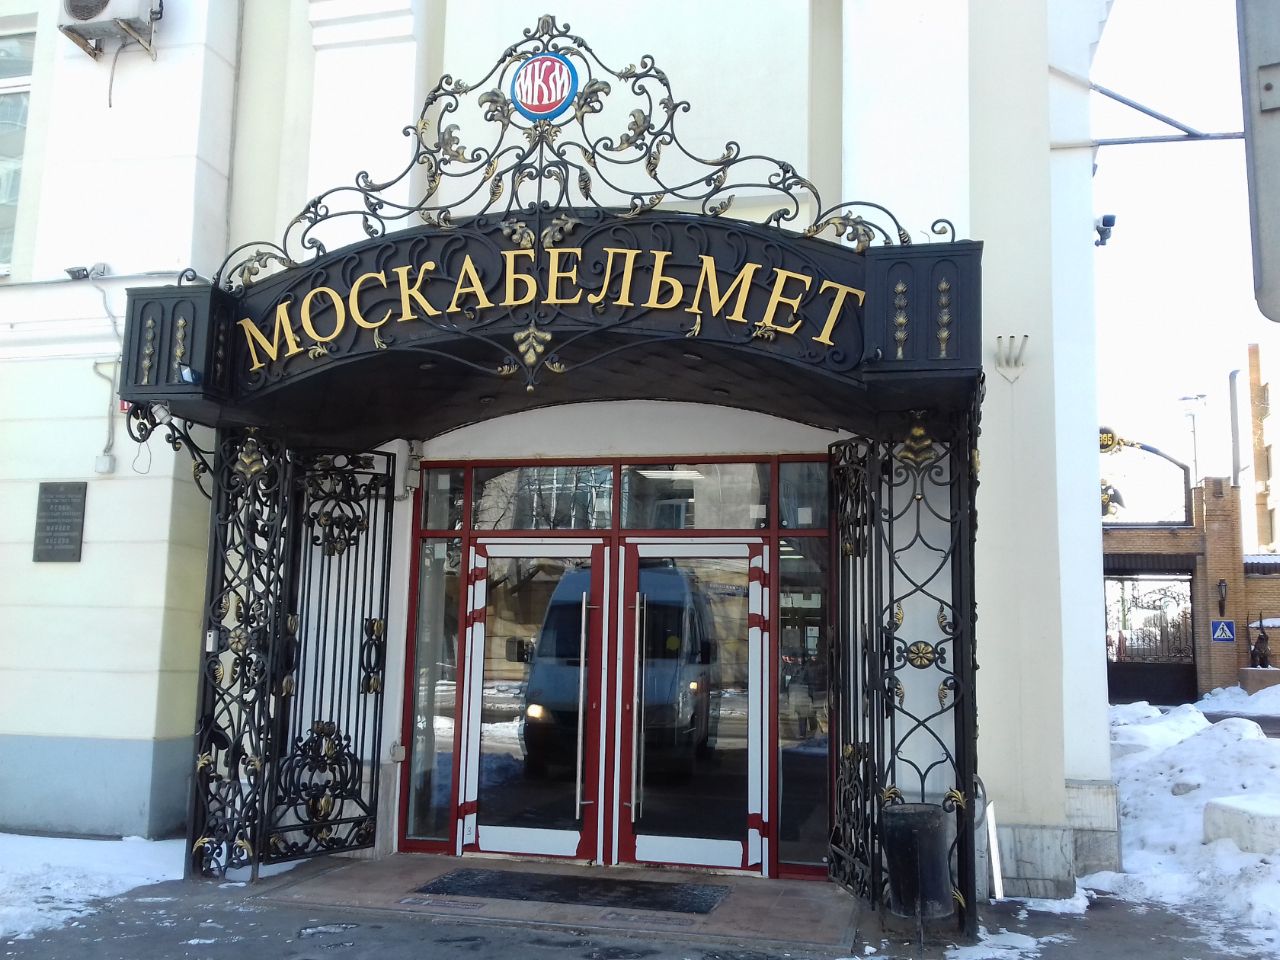 Бизнес Центр Индустриальный парк Москабельмет (2с5)